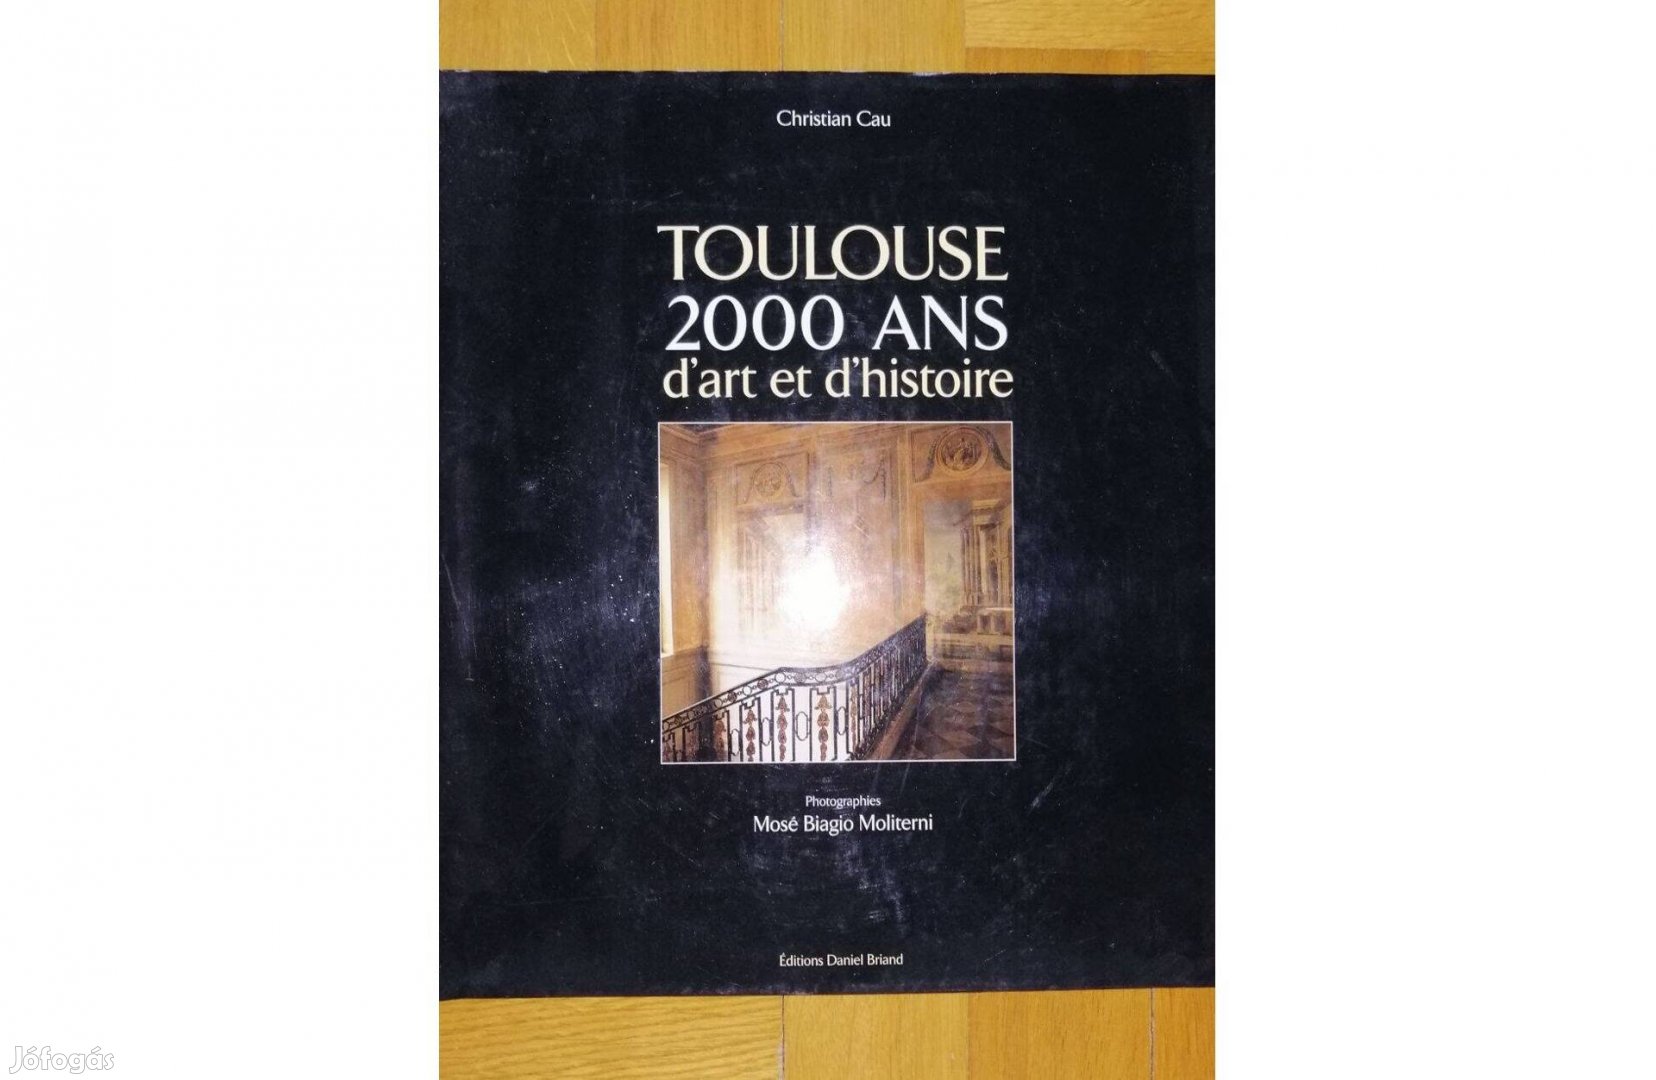 Eladó Toulouse könyv!